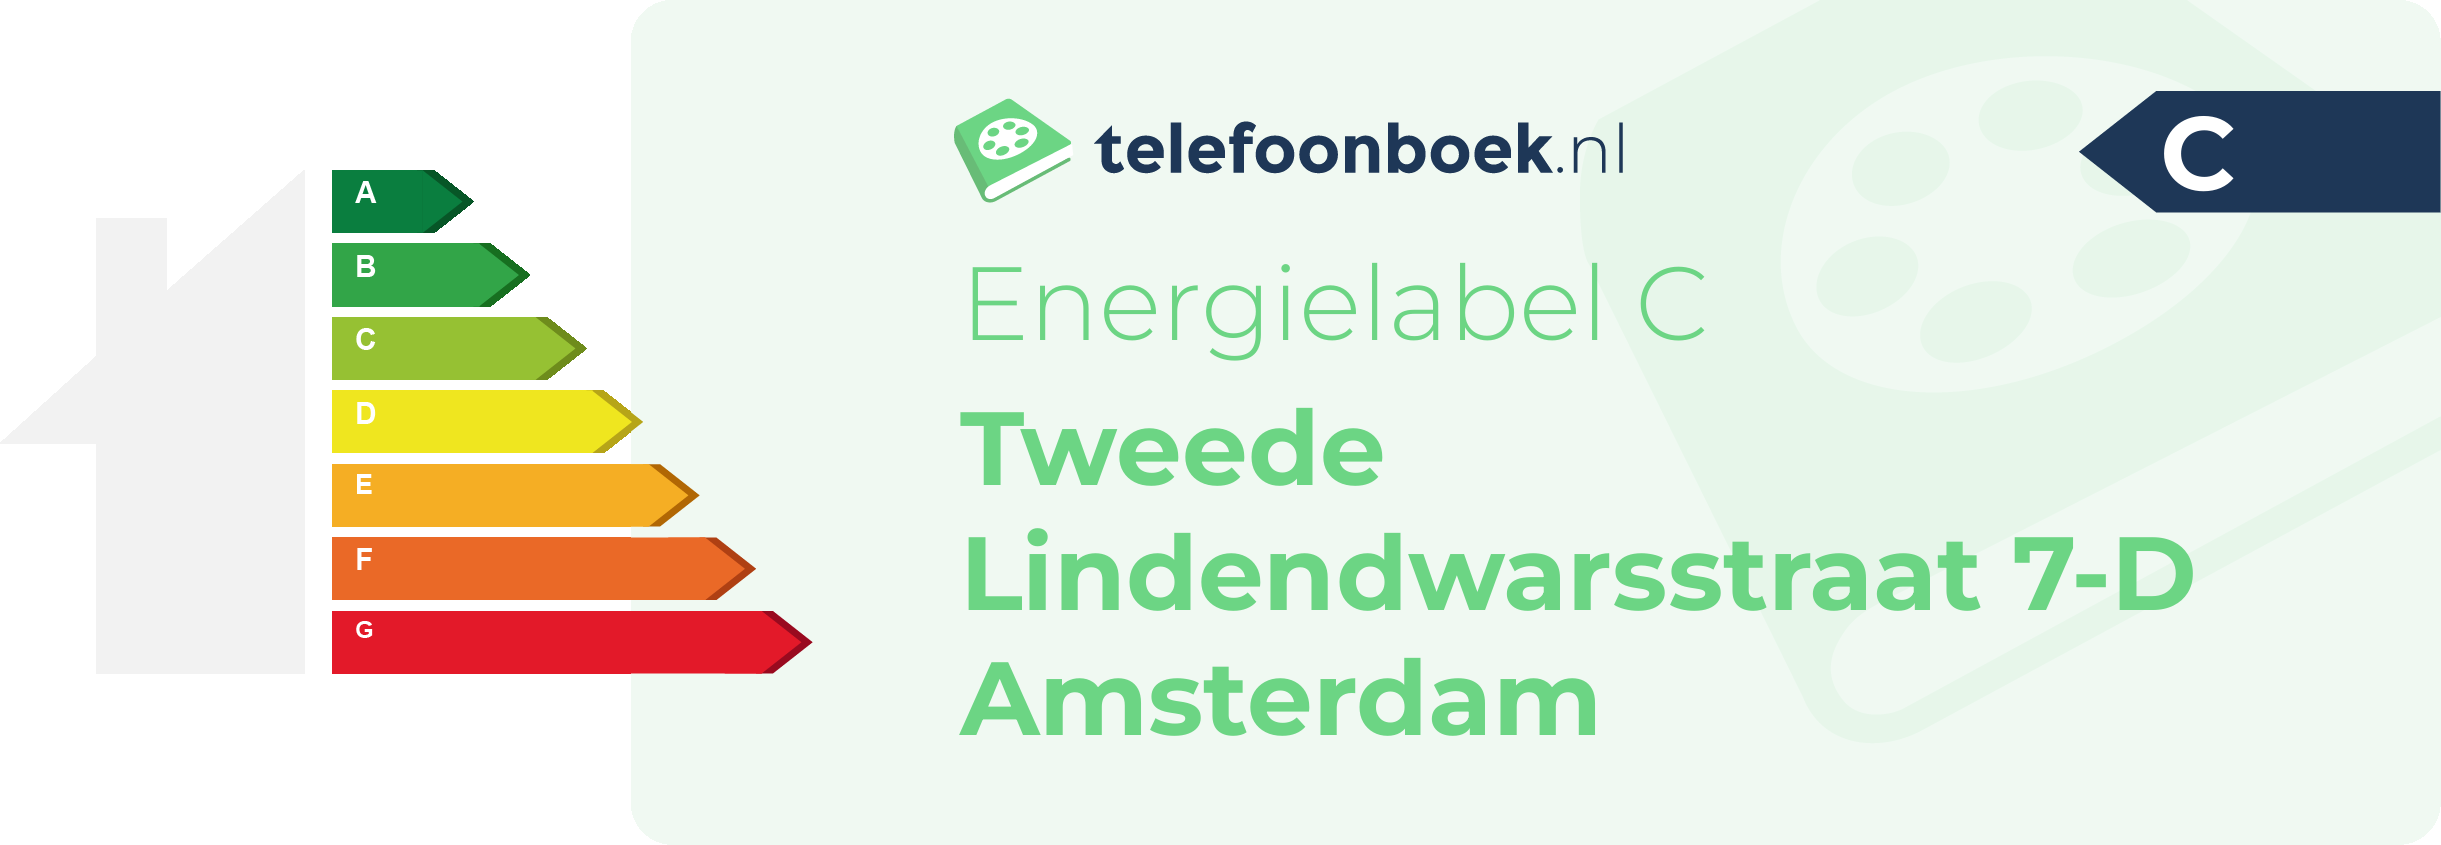 Energielabel Tweede Lindendwarsstraat 7-D Amsterdam